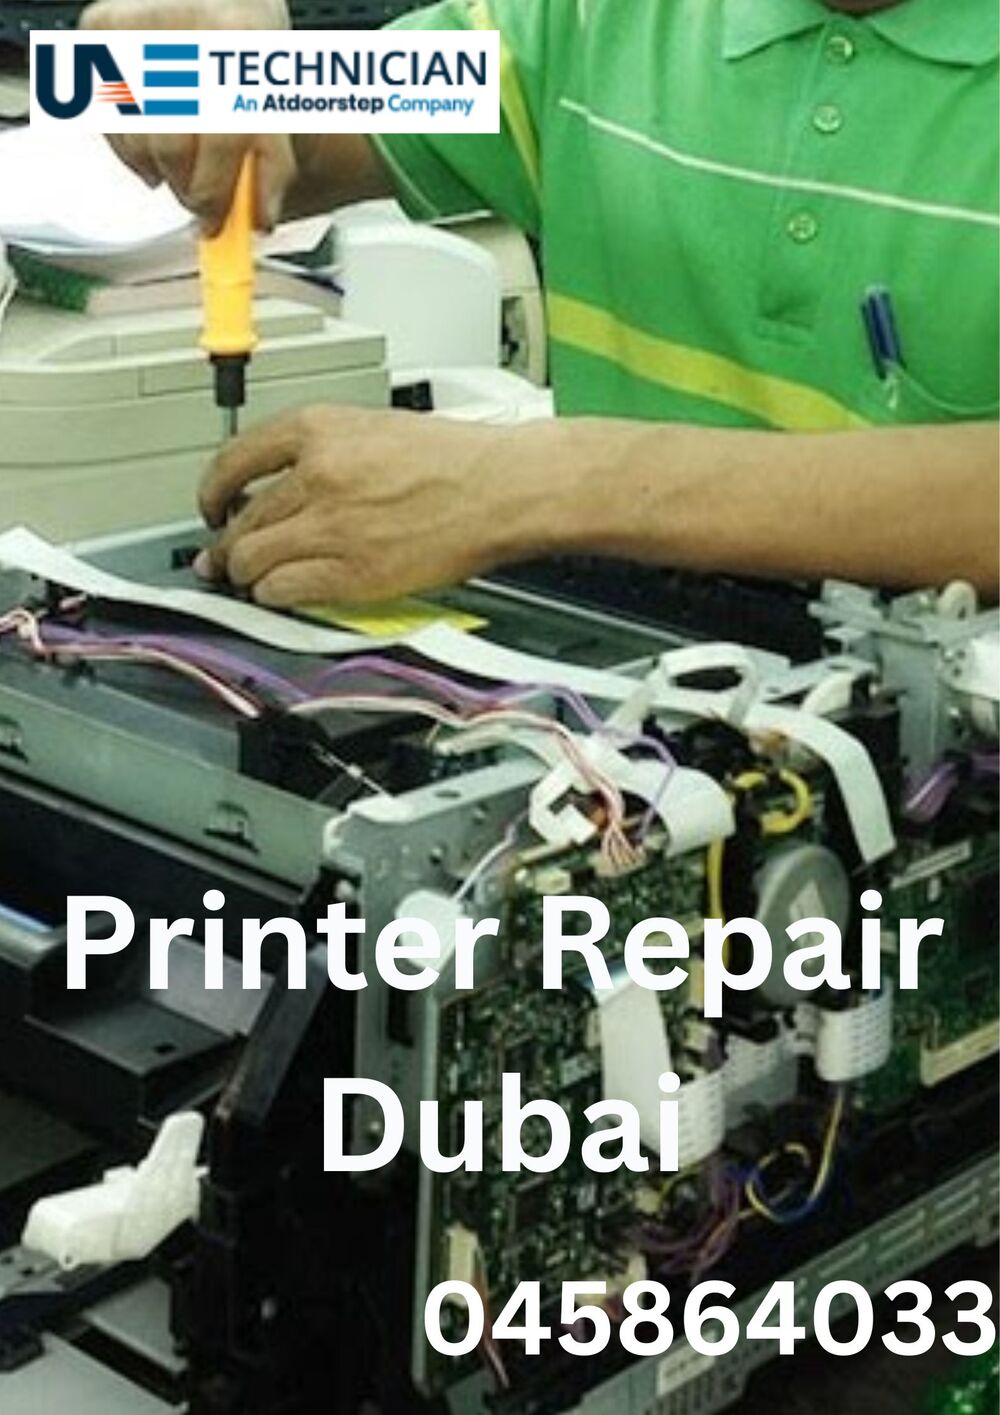 F2help Printer Repair Sharjah Near Me for Major Brands